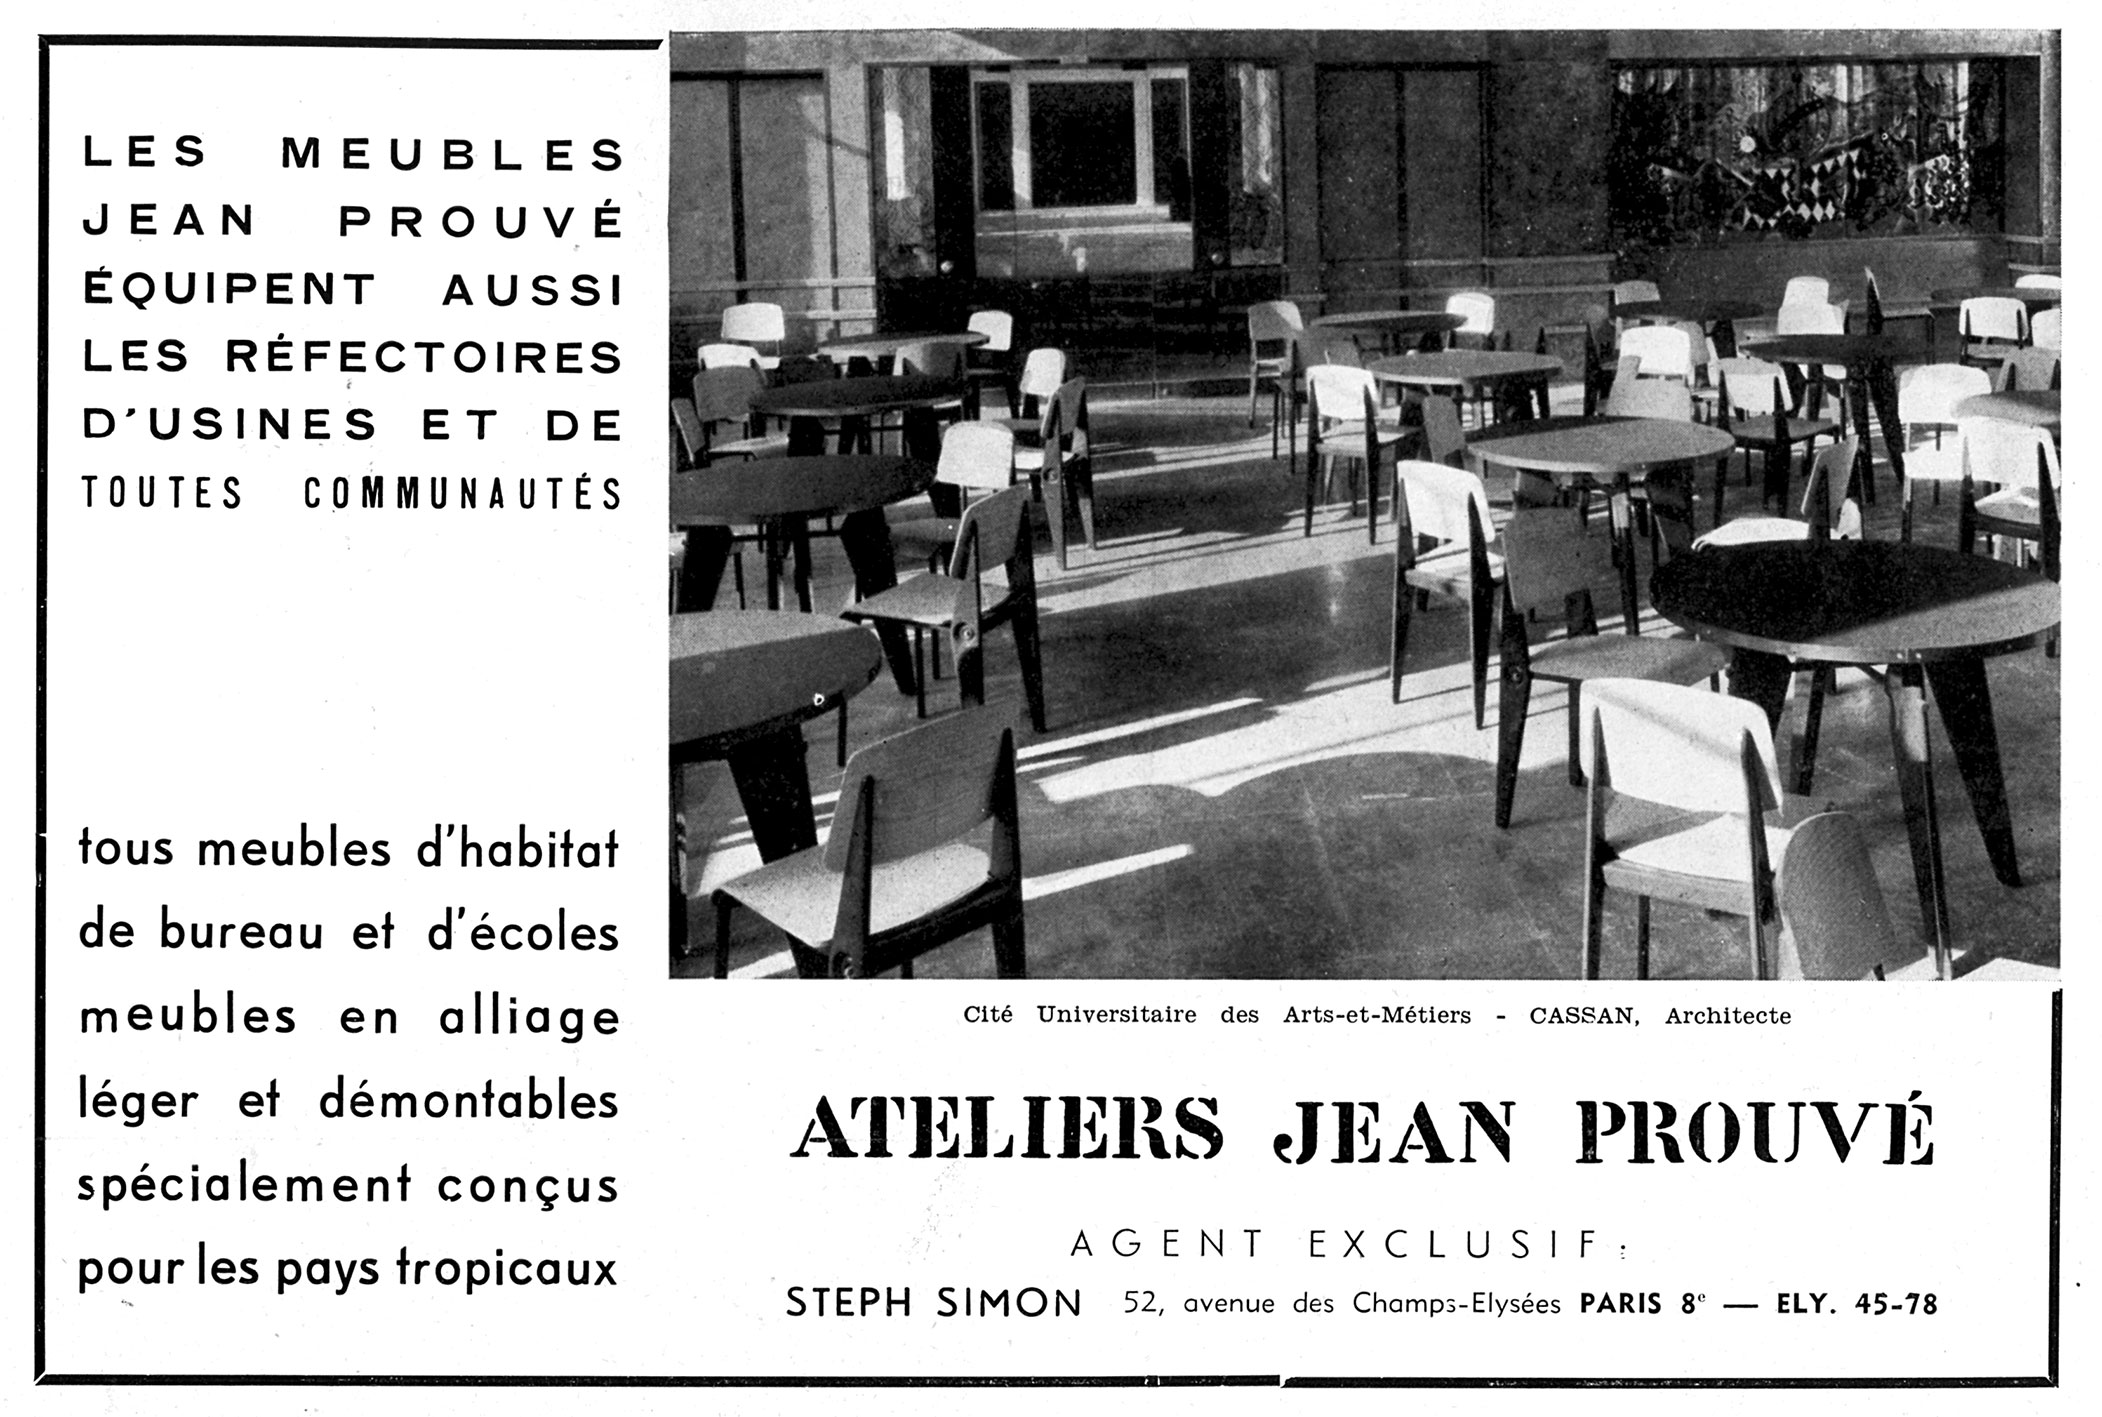 Publicité des Ateliers Jean Prouvé, <i>L’Architecture d’aujourd’hui,</i> n° 37, octobre 1951.